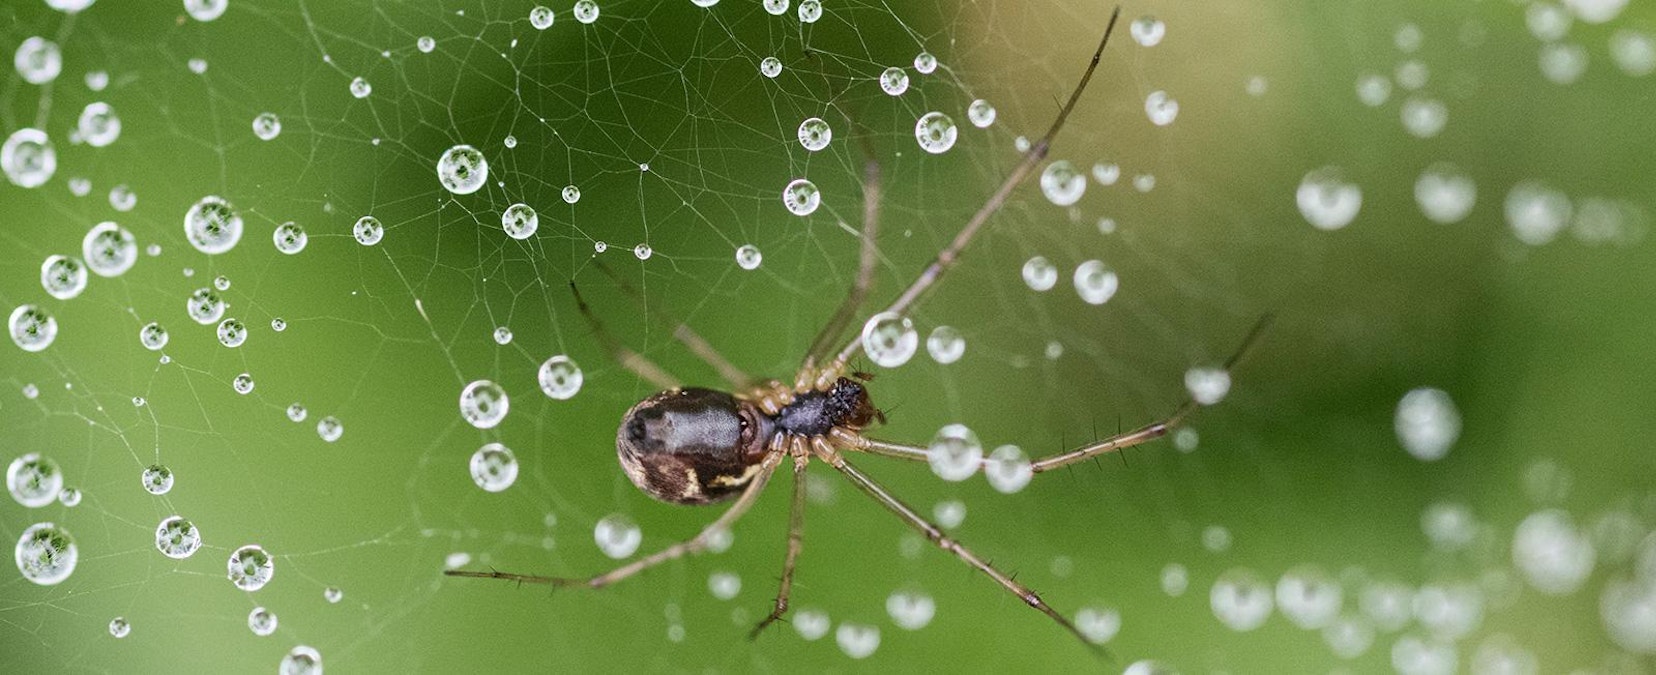 Hämähäkeillä on useimmiten yhtä monta silmää kuin jalkaakin – vaikka  näkökyky ei ole kehuttava, ne näkevät samanaikaisesti eteen, ylös ja  sivuille - MT Metsä - Maaseudun Tulevaisuus